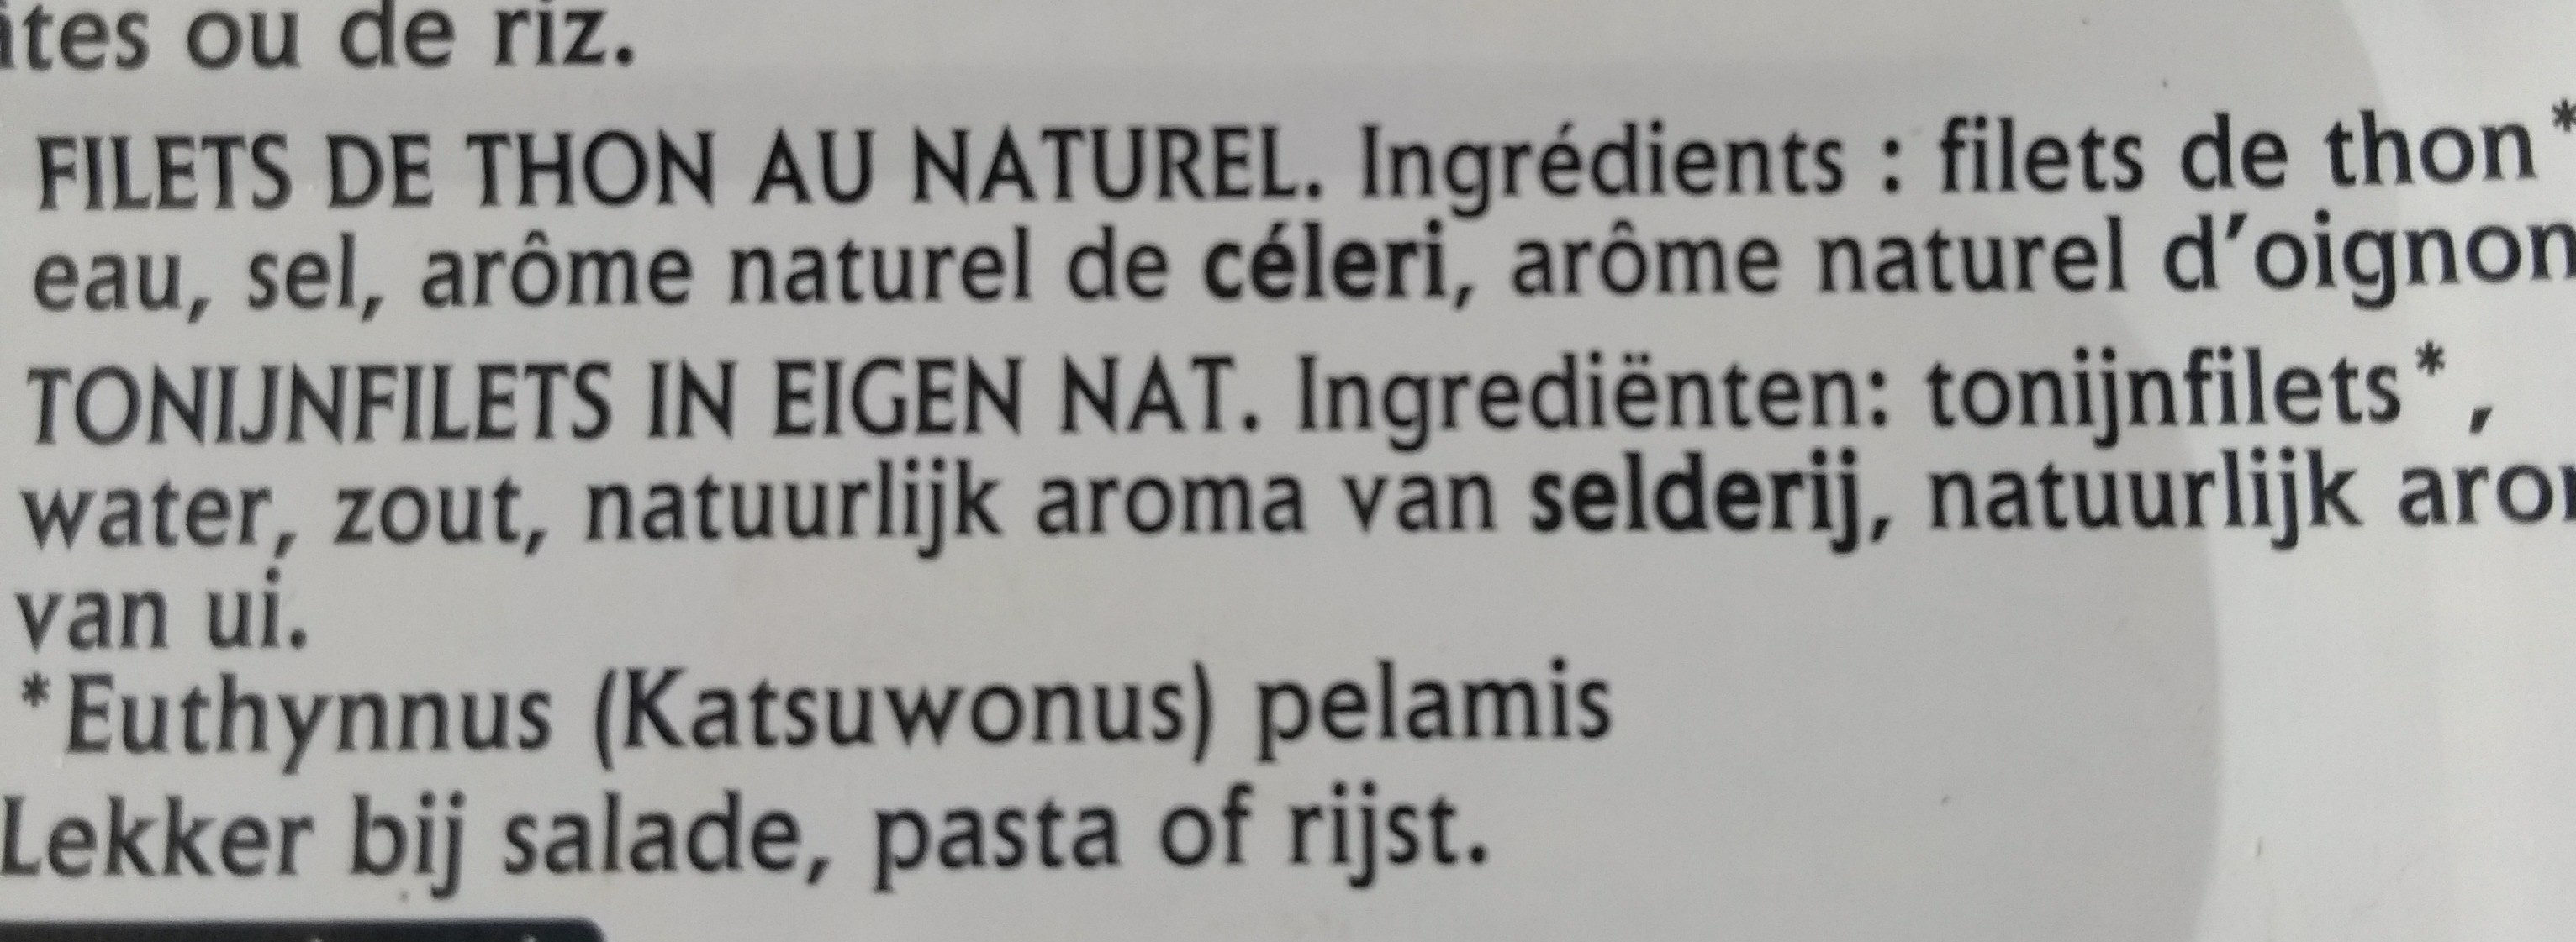 Filets de thon au naturel - Ingrediënten - fr